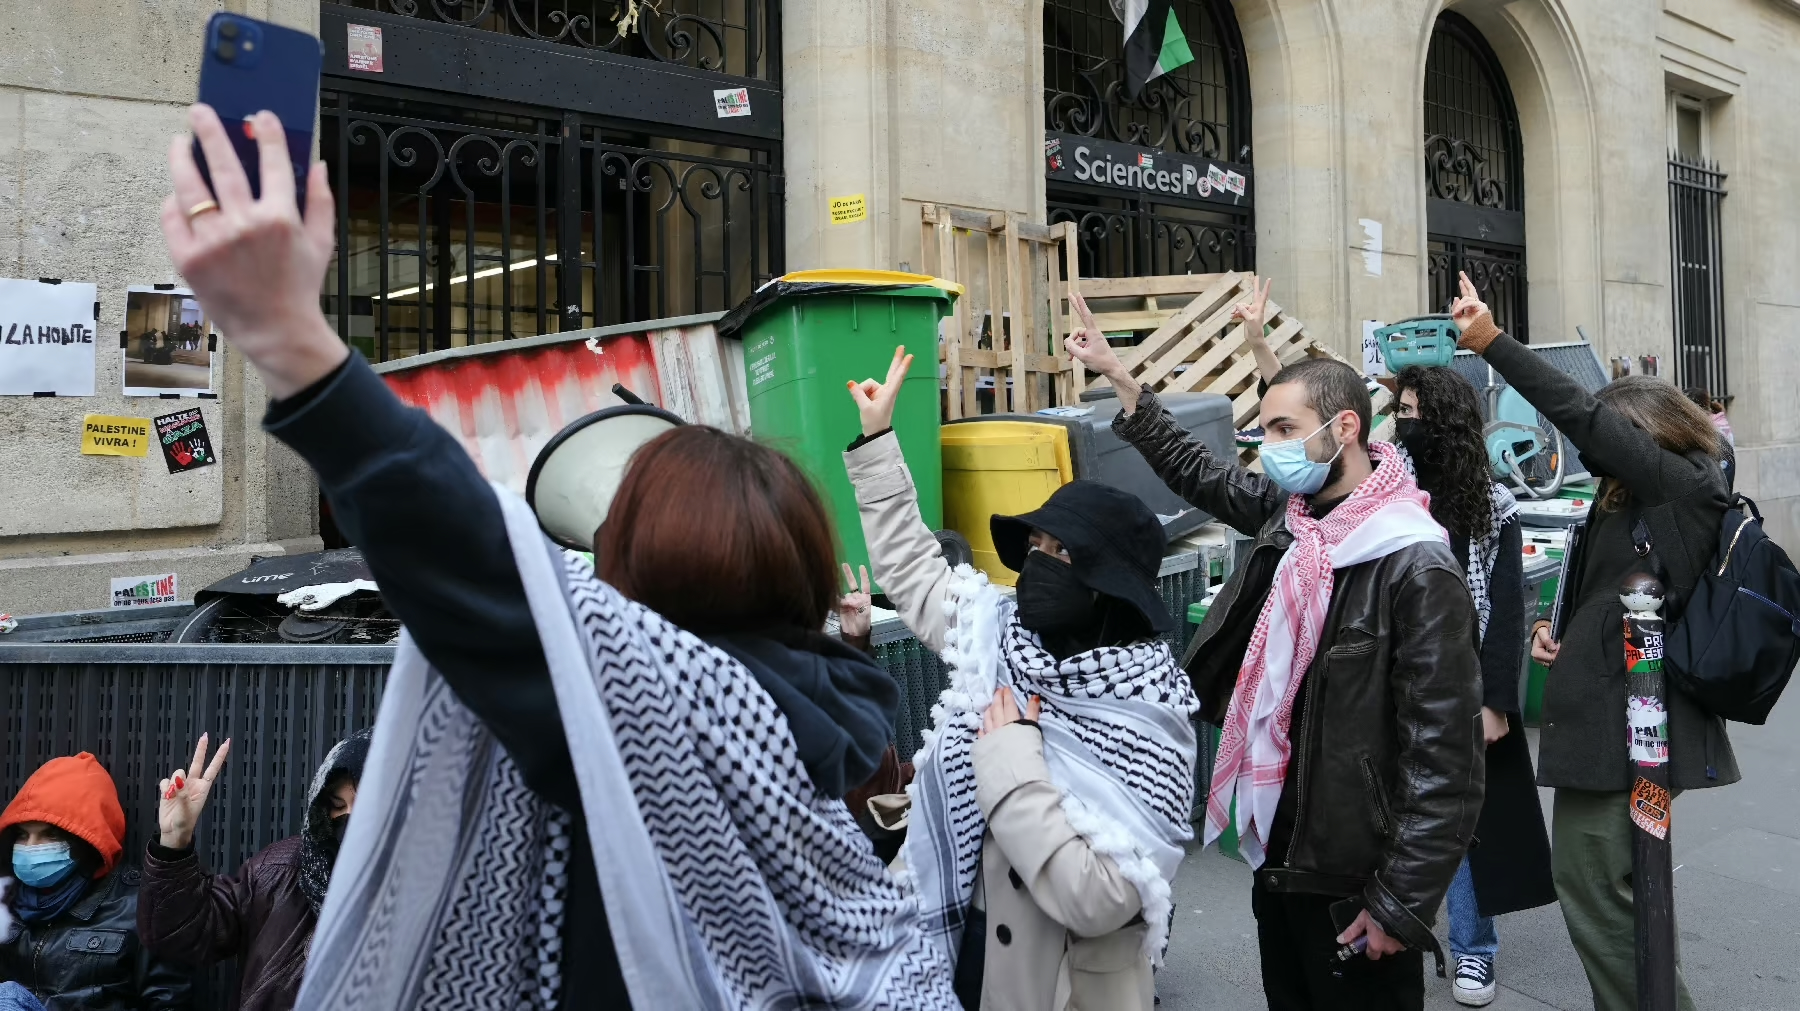 Universitatea de Ştiinţe Politice din Paris s-a închis vineri, din cauza protestelor în sprijinul palestinienilor